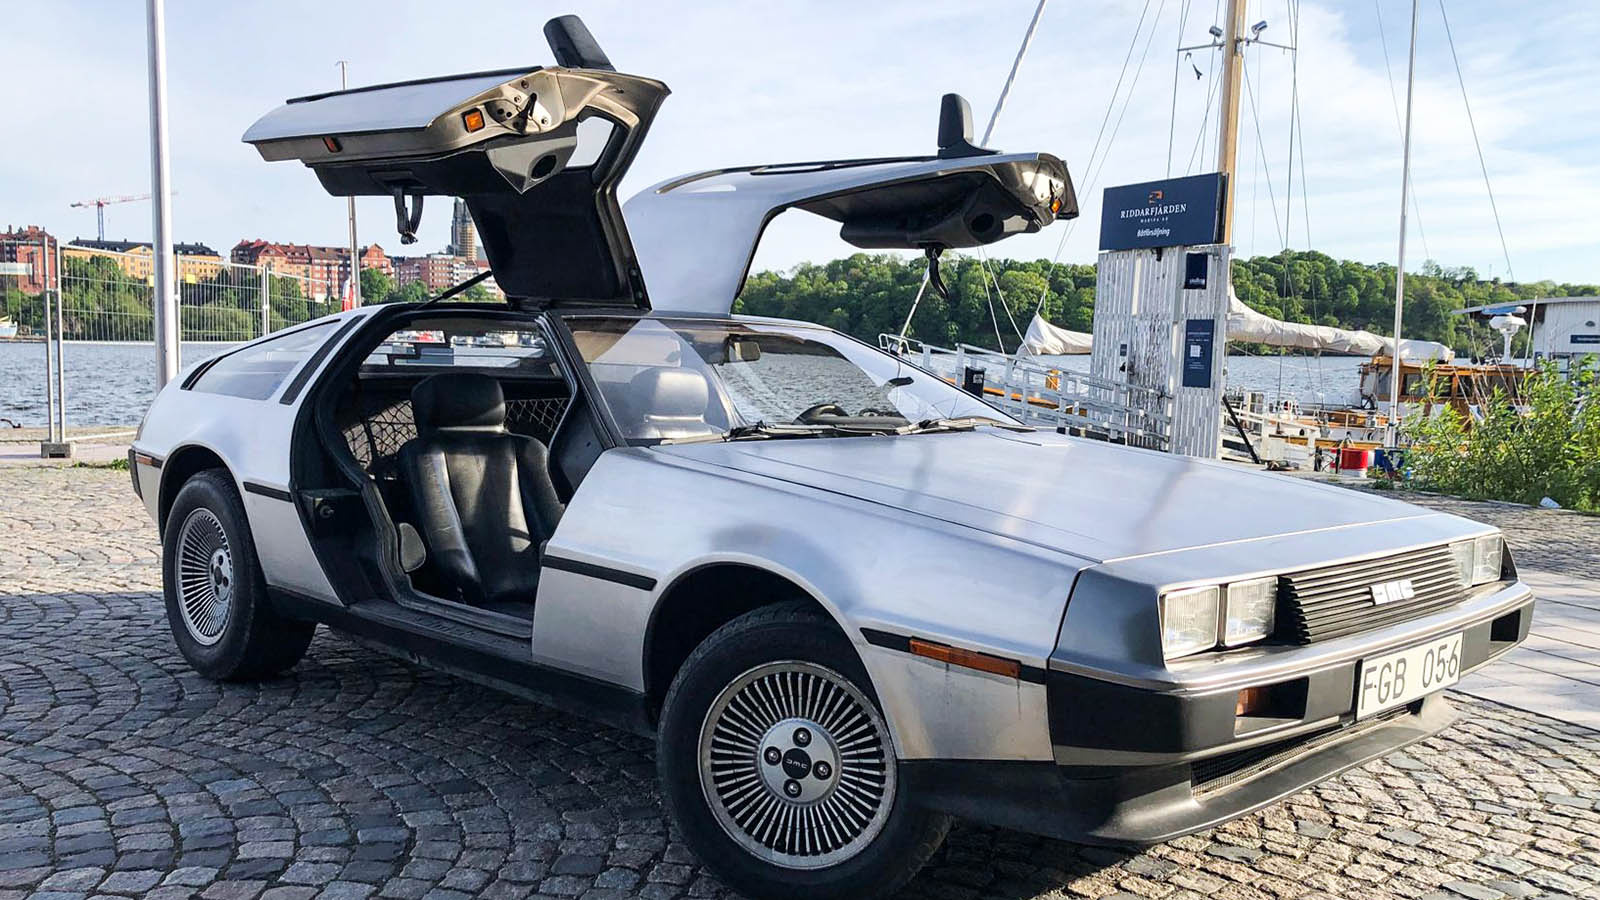 Äkta DeLorean säljs i Sverige: Väcker enorm uppmärksamhet